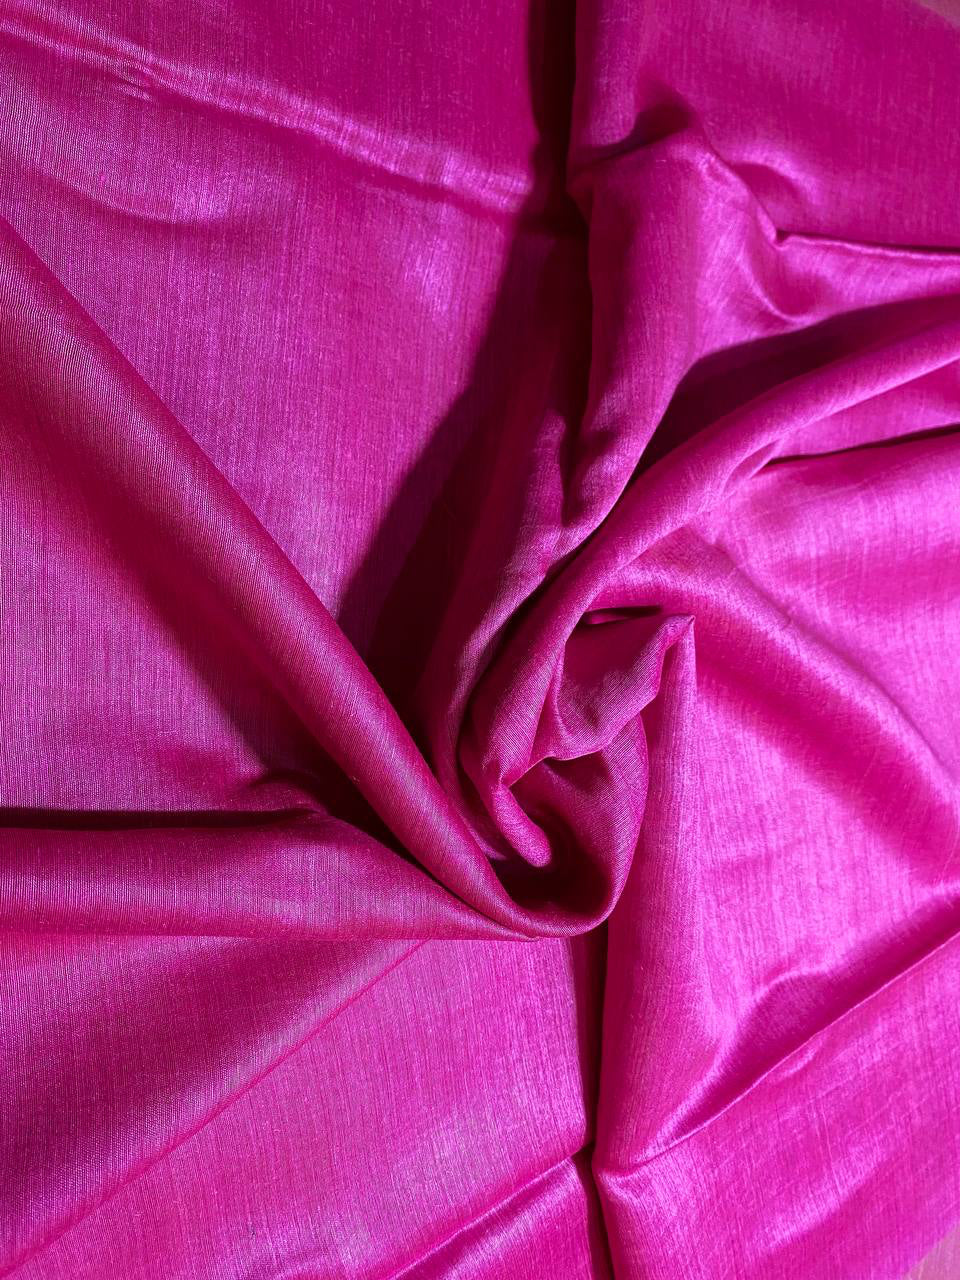 Hot Pink Shade Handwoven Munga Tussar Silk Saree | Golden Zari Border | KIHUMS Saree